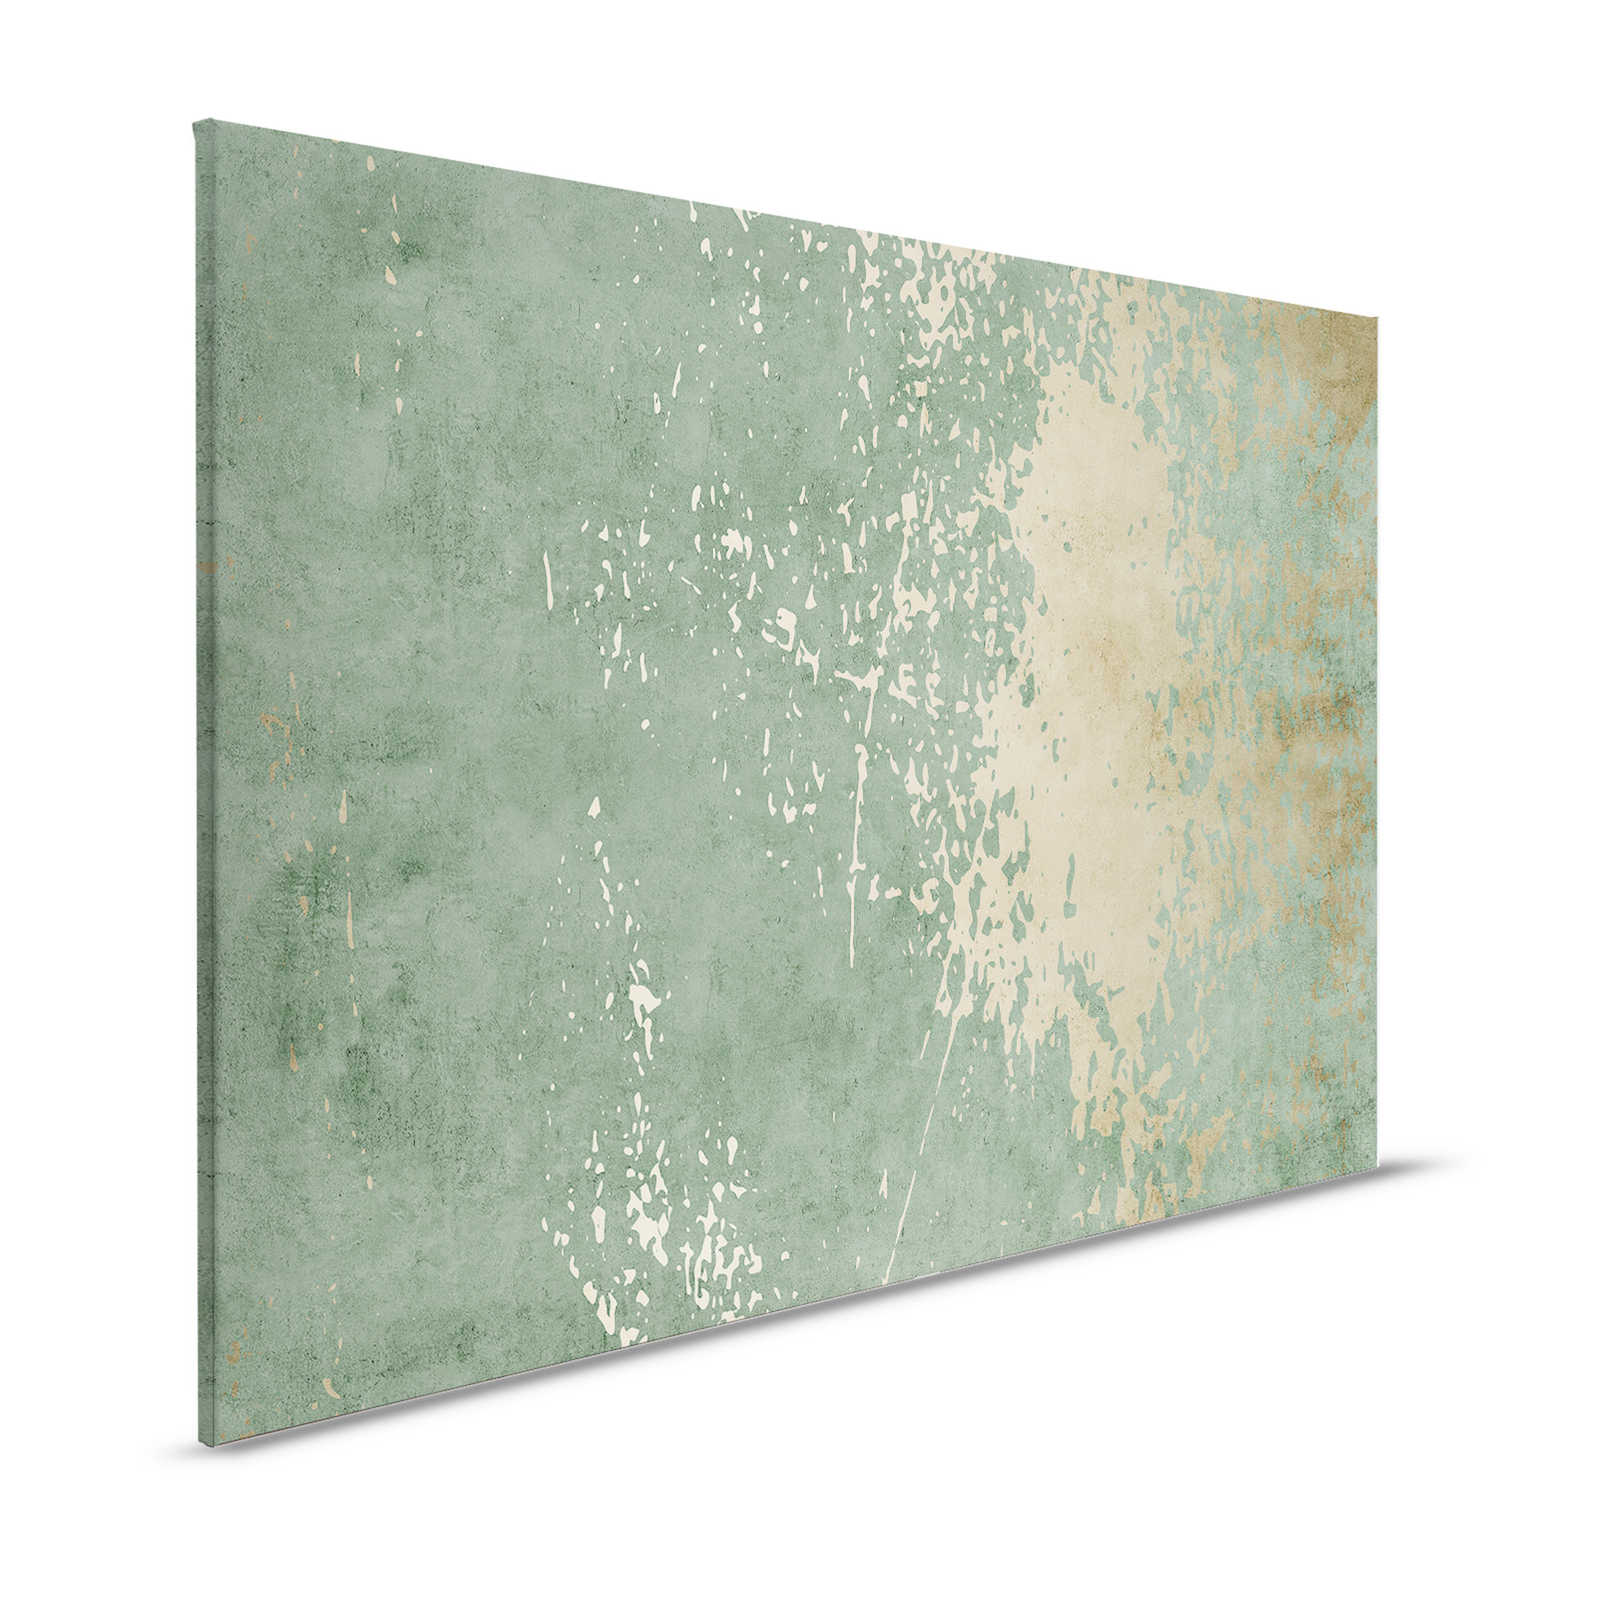 Vintage Wall 1 - Quadro su tela verde salvia e oro effetto intonaco usato - 1,20 m x 0,80 m
